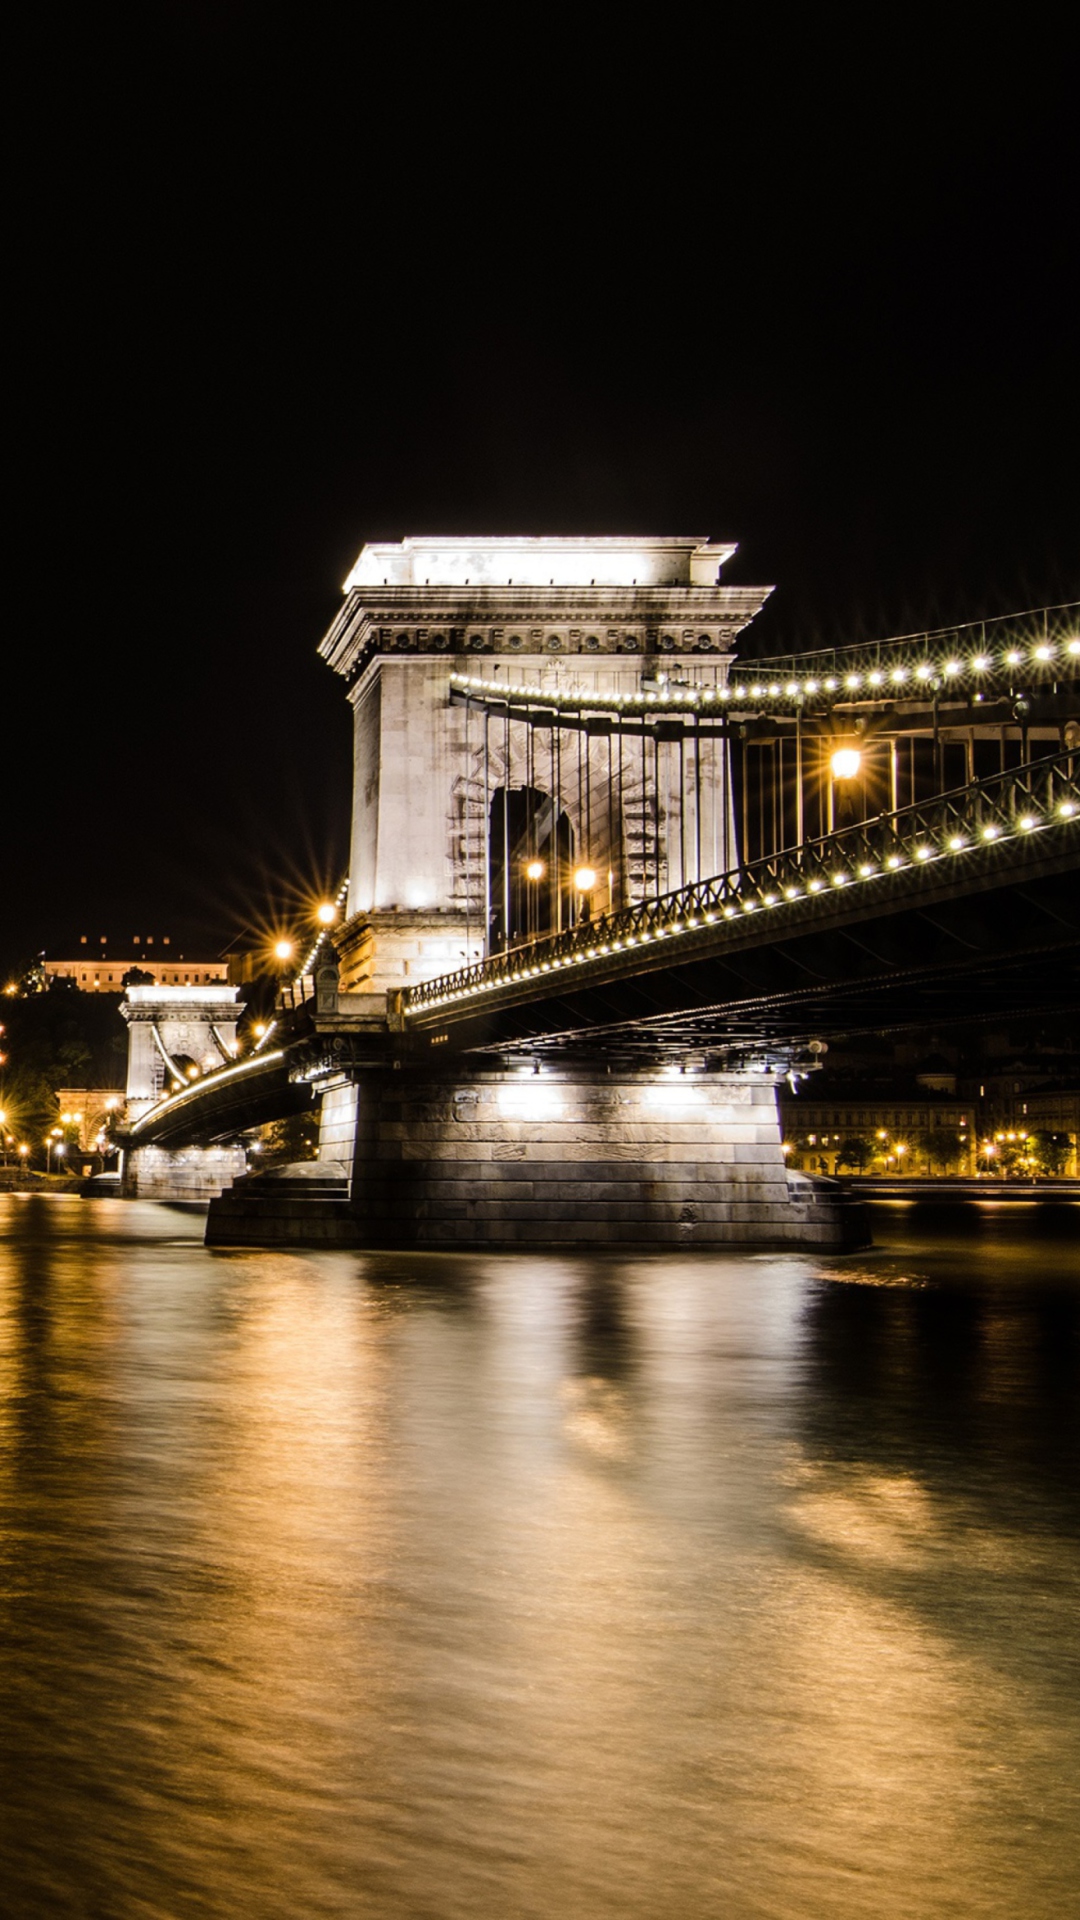 Das Chain Bridge at Night in Budapest Hungary Wallpaper 1080x1920